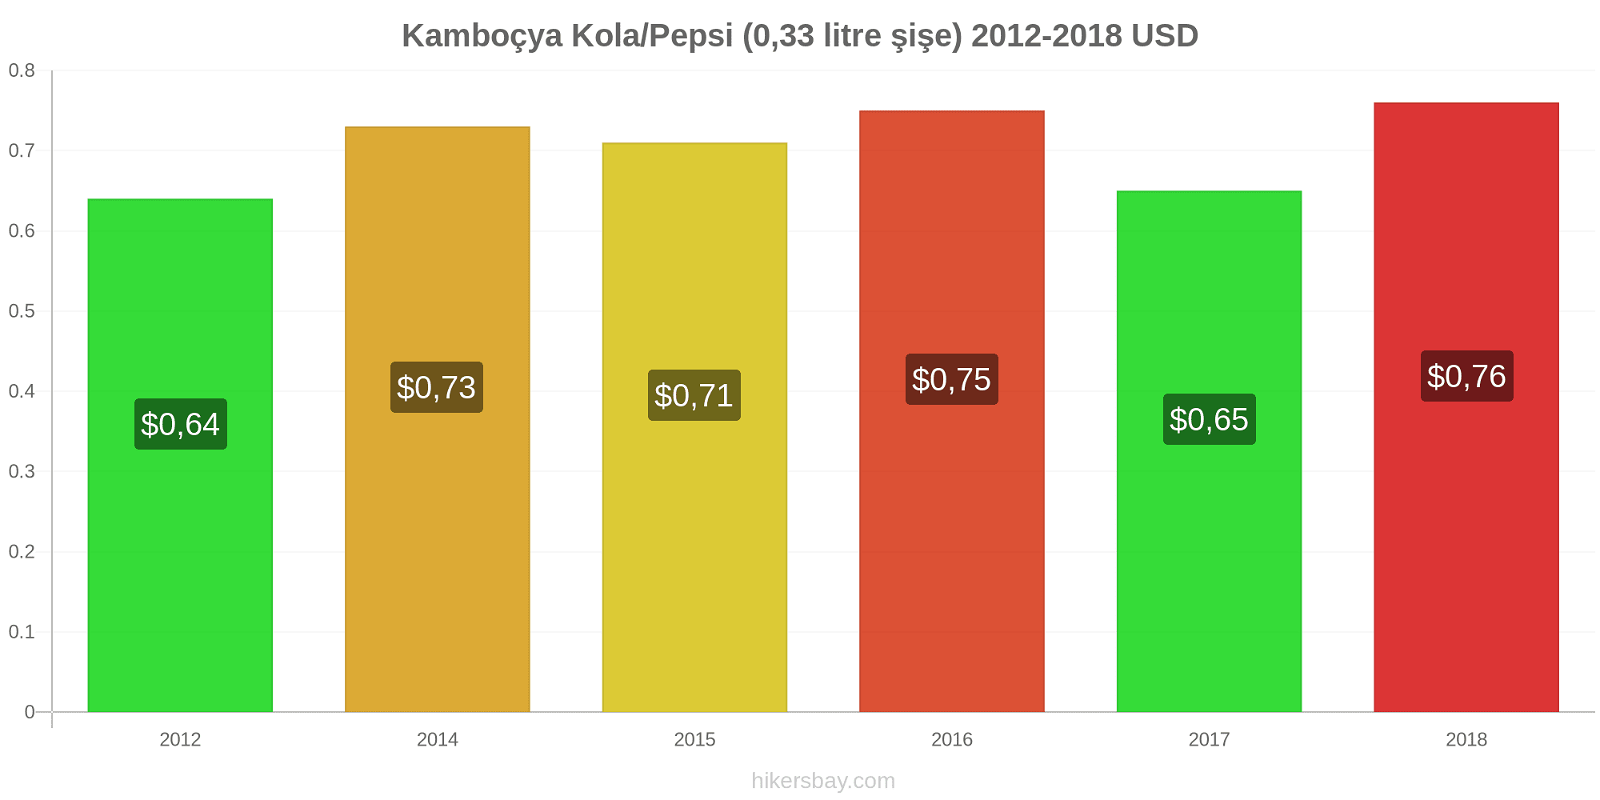 Kamboçya fiyat değişiklikleri Kola/Pepsi (0.33 litre şişe) hikersbay.com